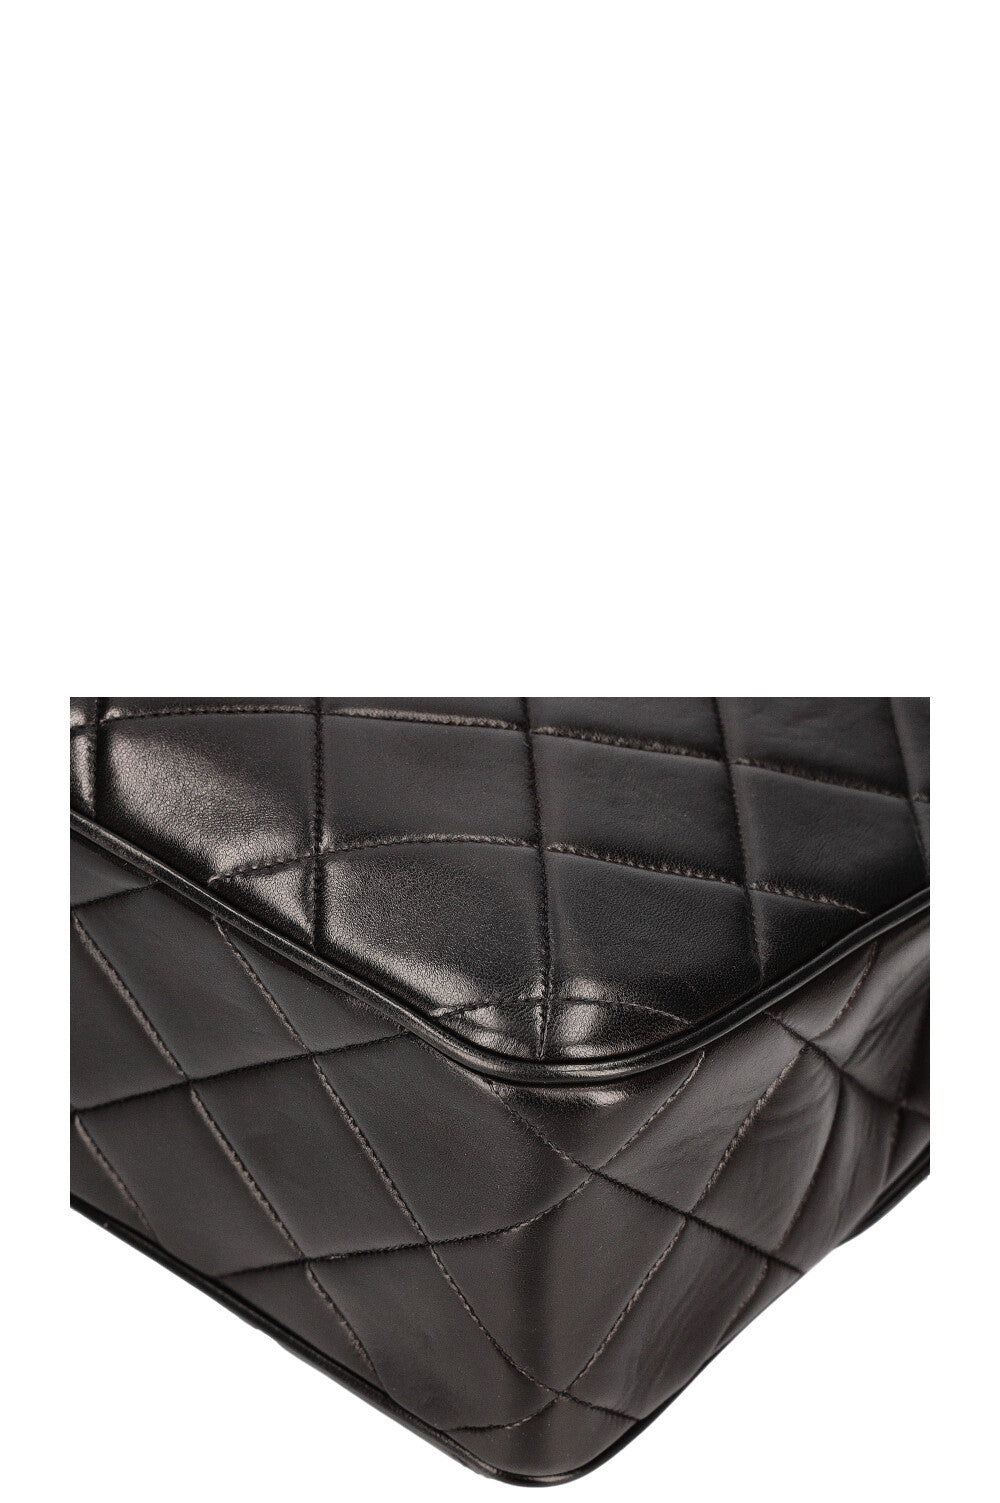 CHANEL Vintage Single Flap Shoulder Bag Quilted Black